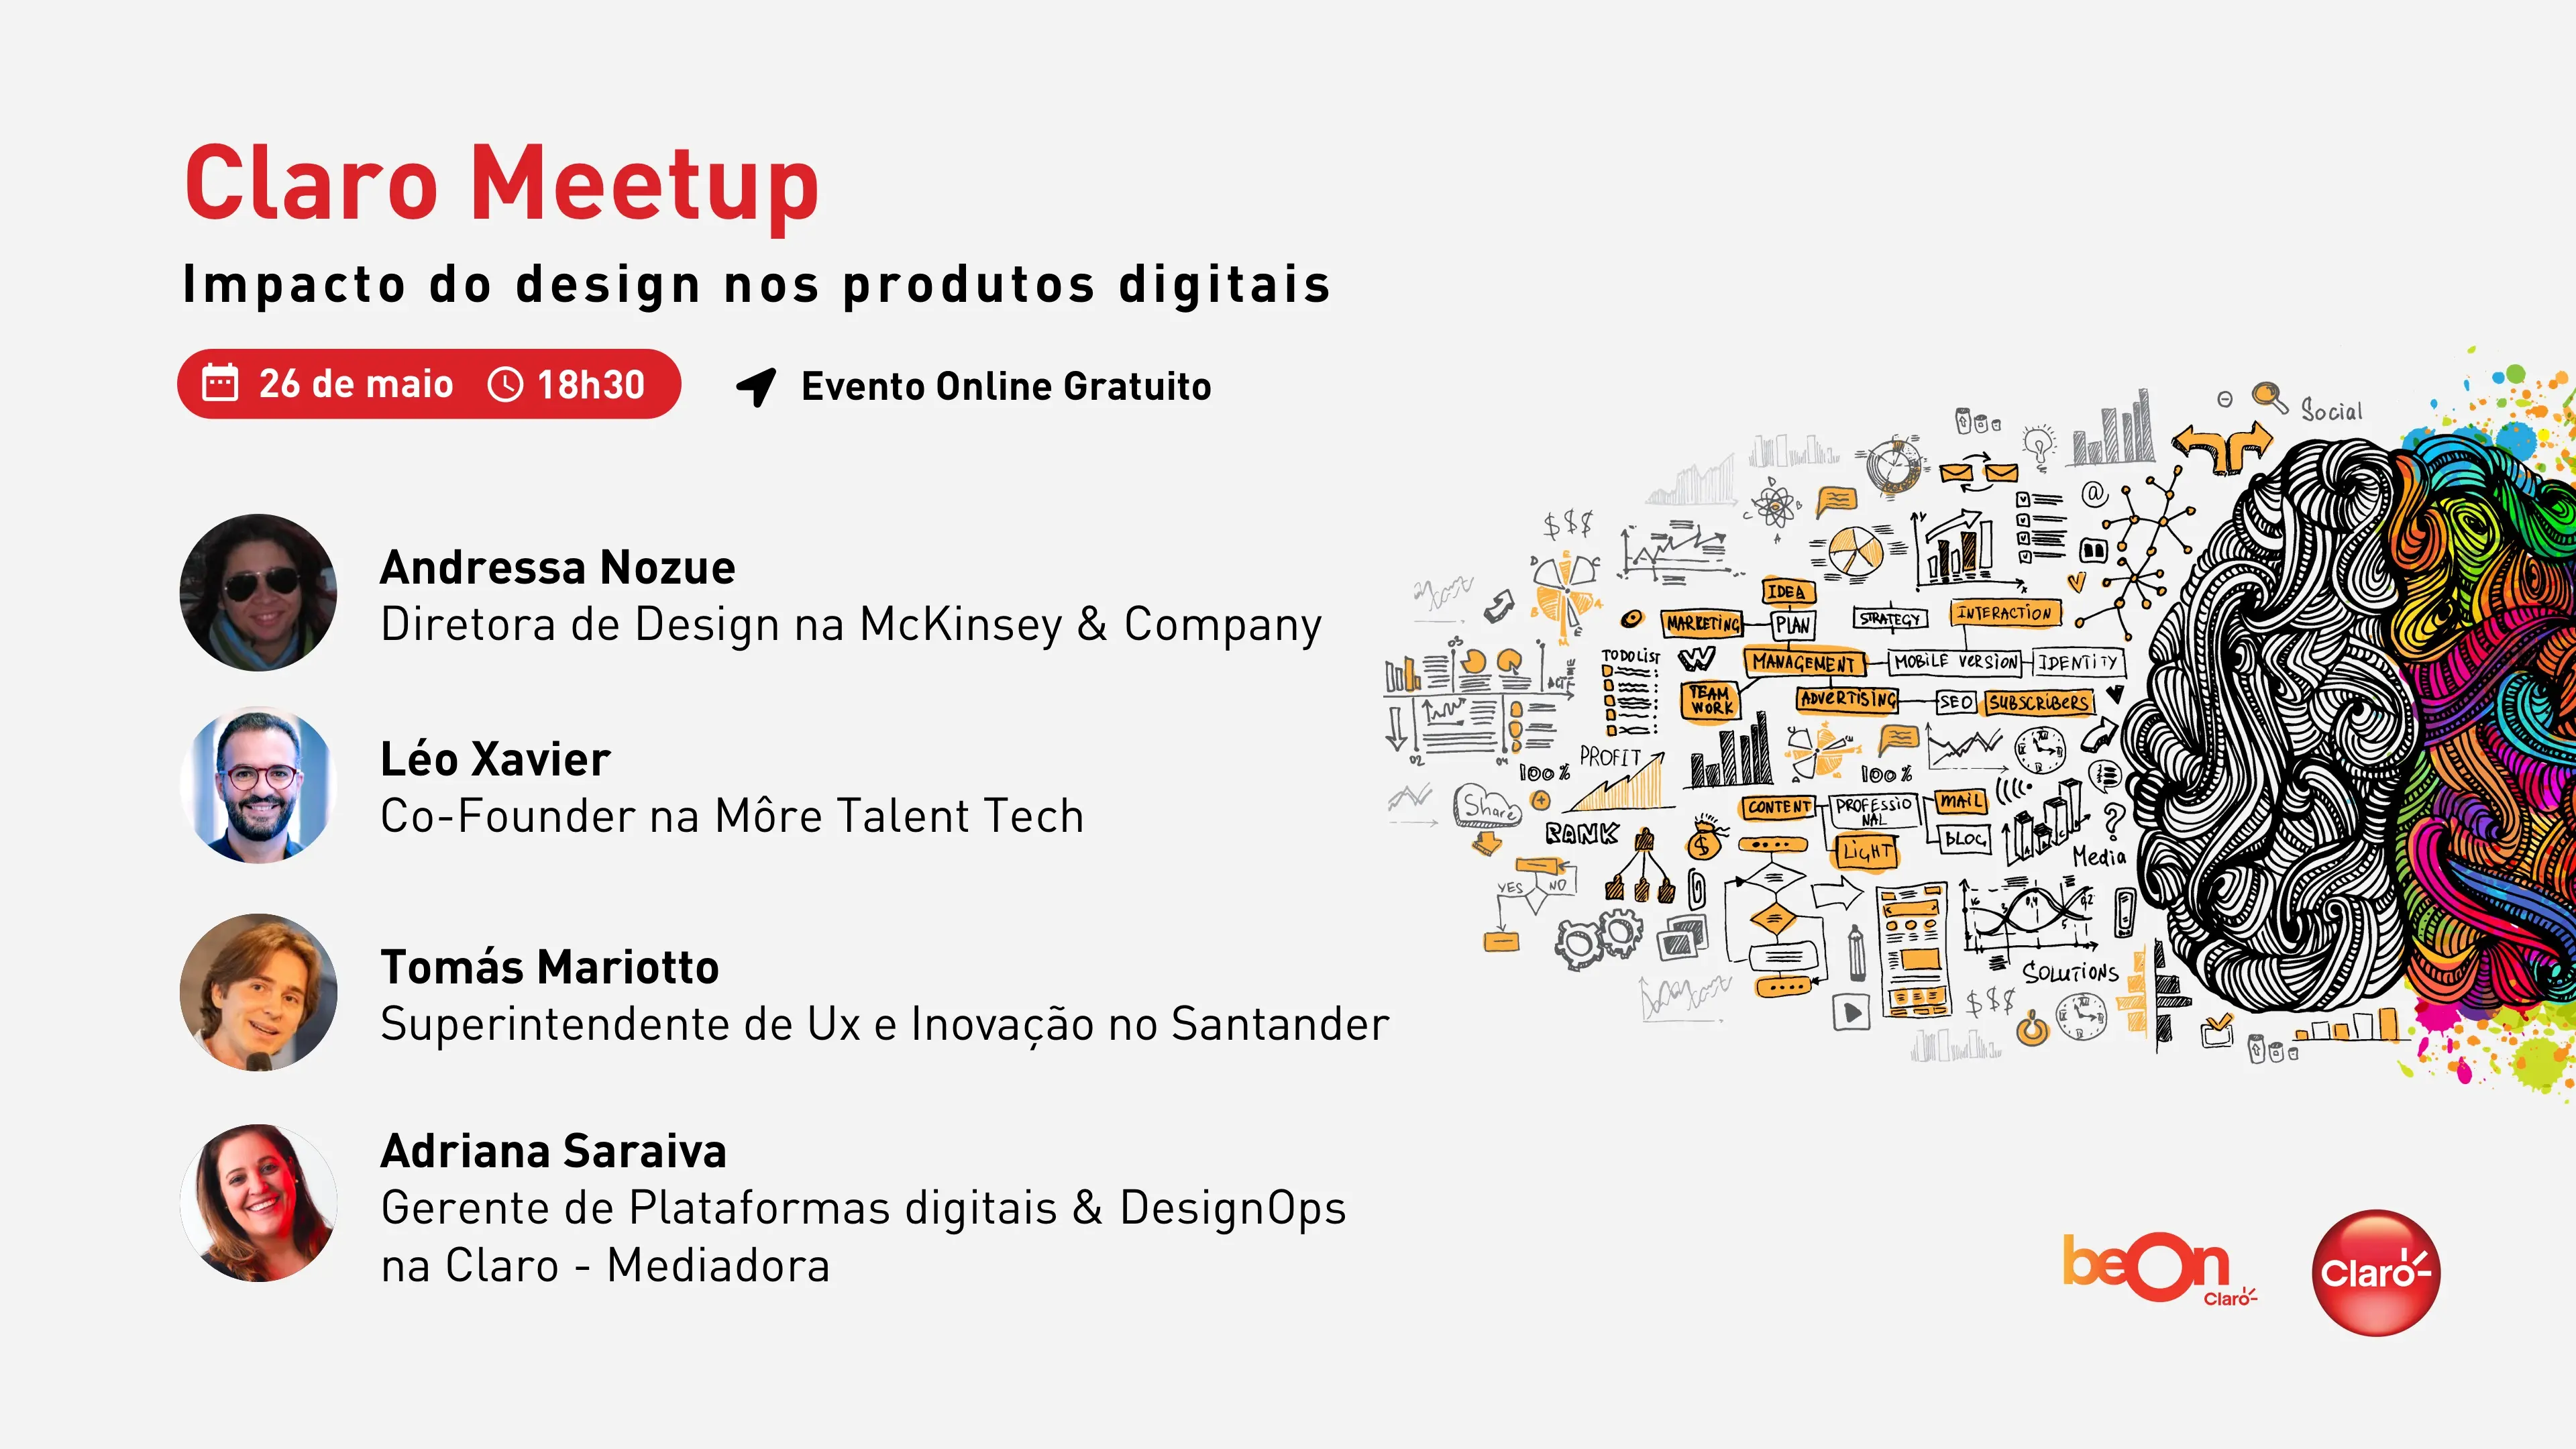 Imagem do convite do Claro Meetup: O impacto do design nos produtos digitais